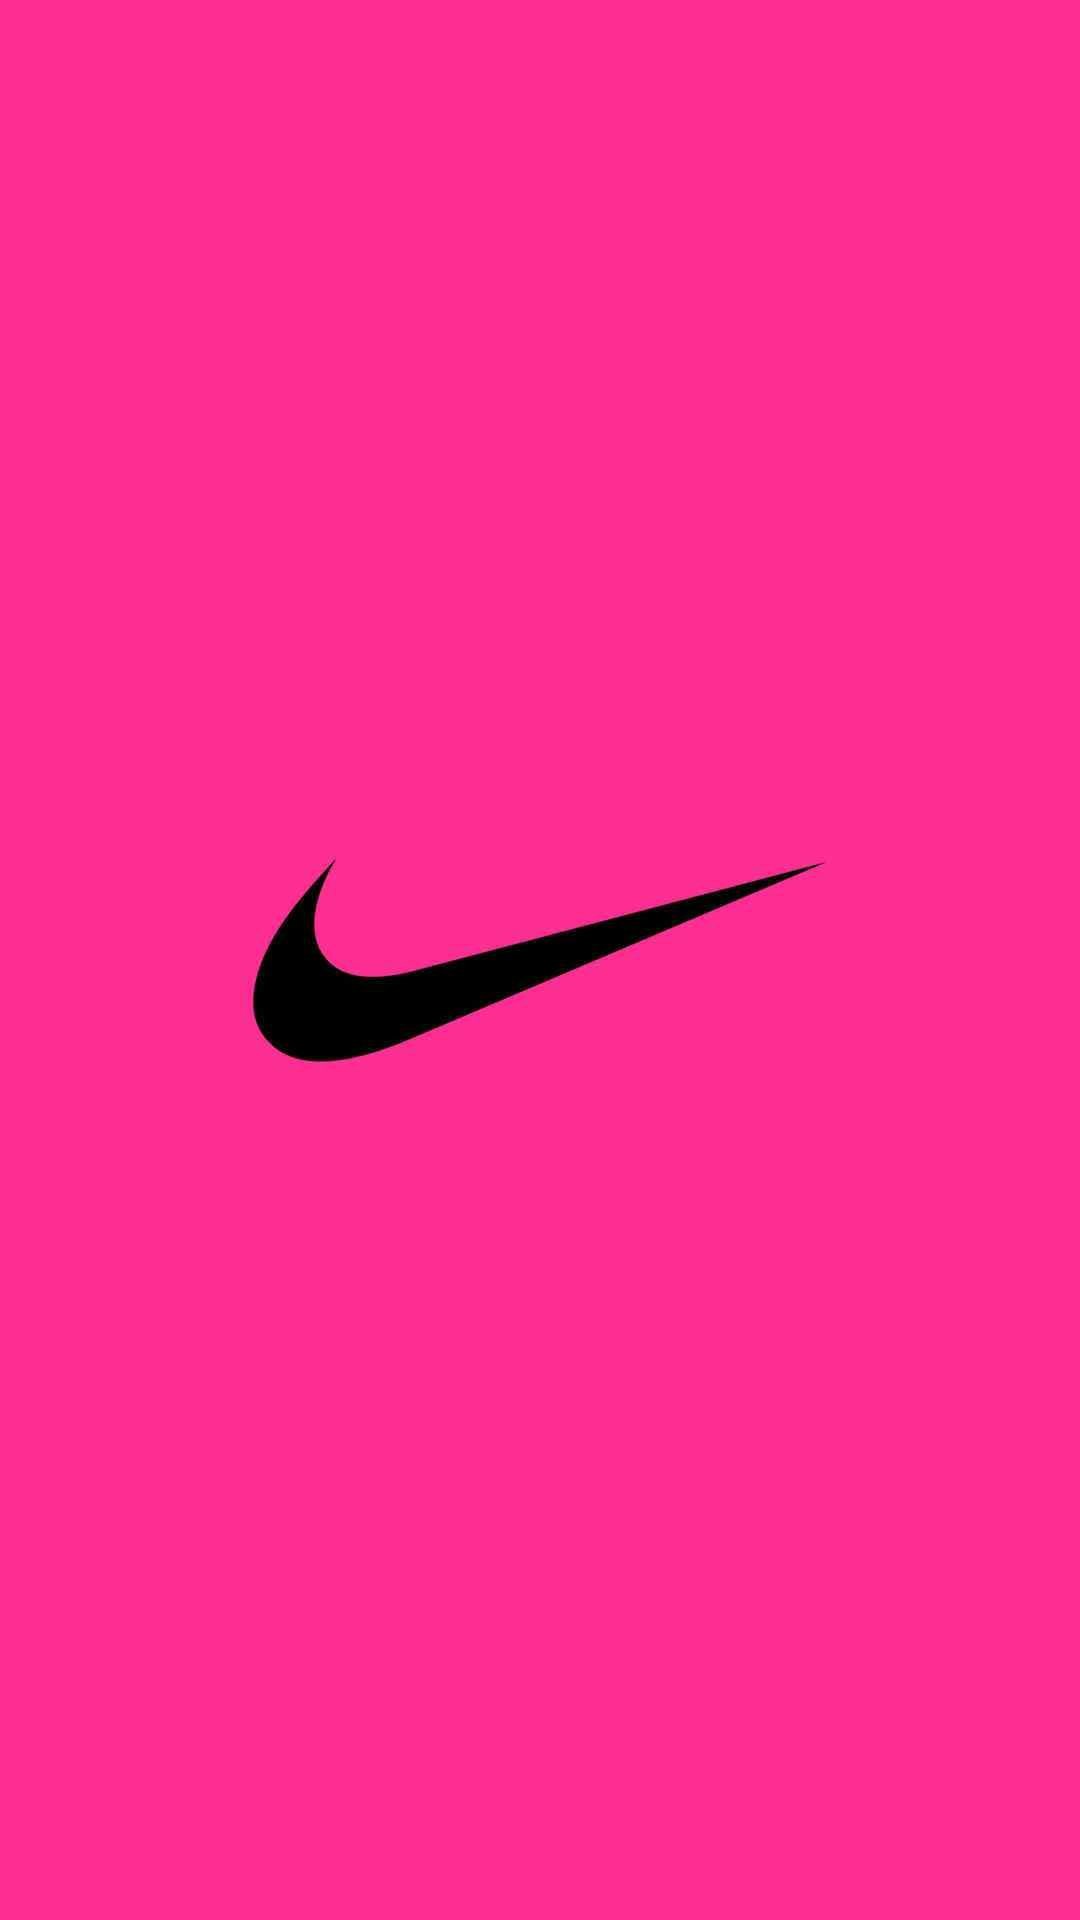 Hãy làm mới màn hình điện thoại của bạn bằng loạt hình nền Nike màu hồng tuyệt đẹp. Sự kết hợp giữa hiện đại và trẻ trung sẽ mang đến cho bạn những trải nghiệm tuyệt vời mỗi khi sử dụng điện thoại.